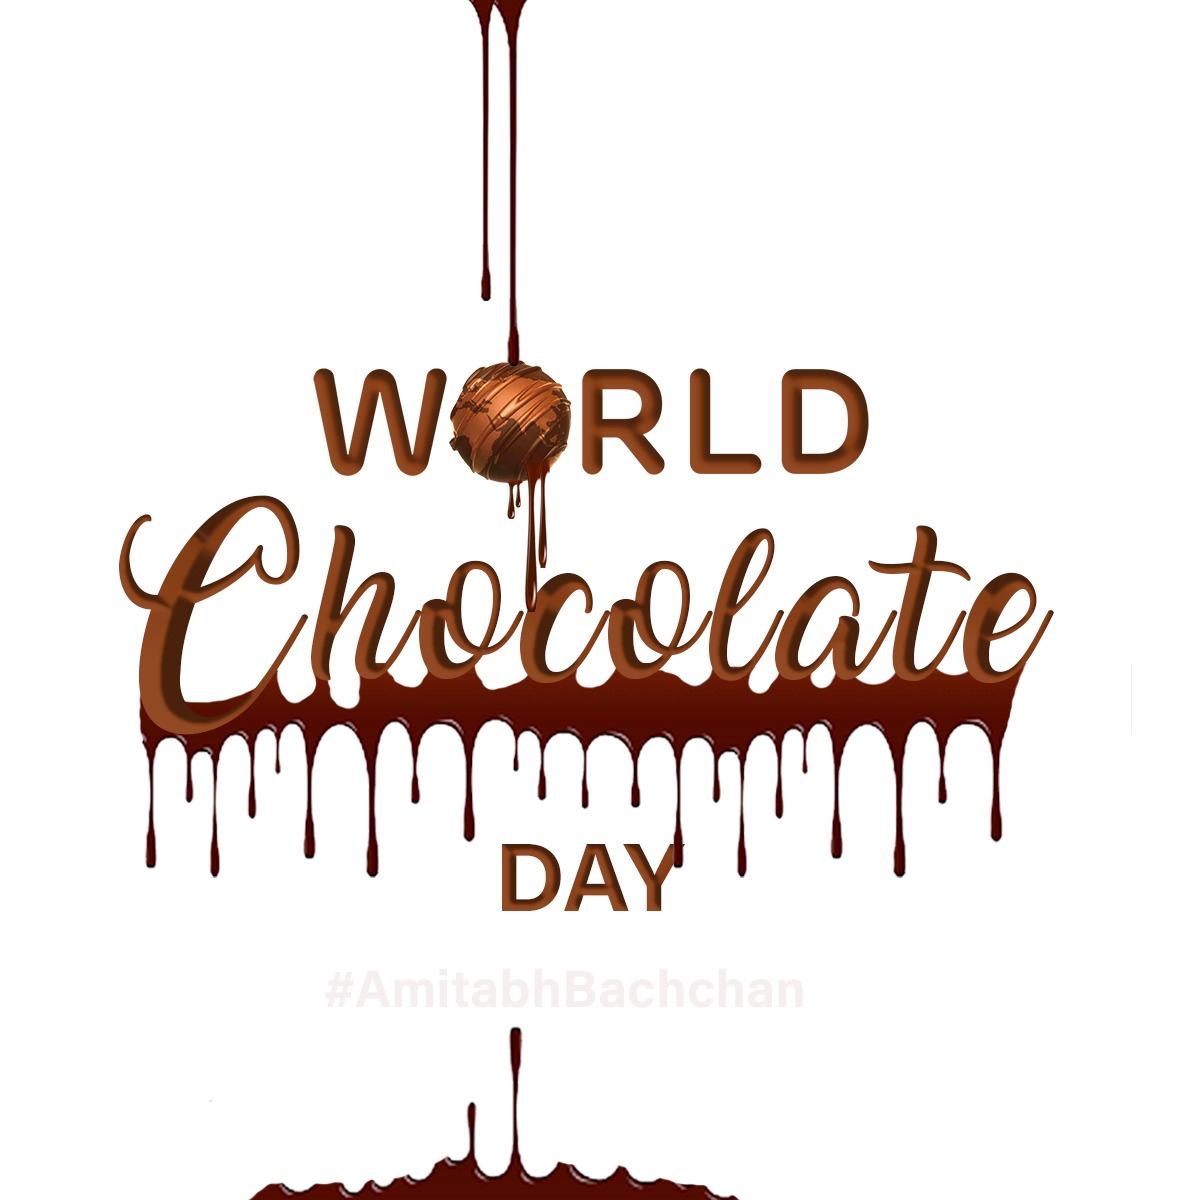 T 3585 - Tomorrow #WorldChocolateDay .. 
विश्व चाकलेट दिवस आ गया, कहन की करा विमोचन  
जब चाकलेट खाना छोड़ दिए, तब क्यूँ तरसावैं मन  ~ ab 
🤔